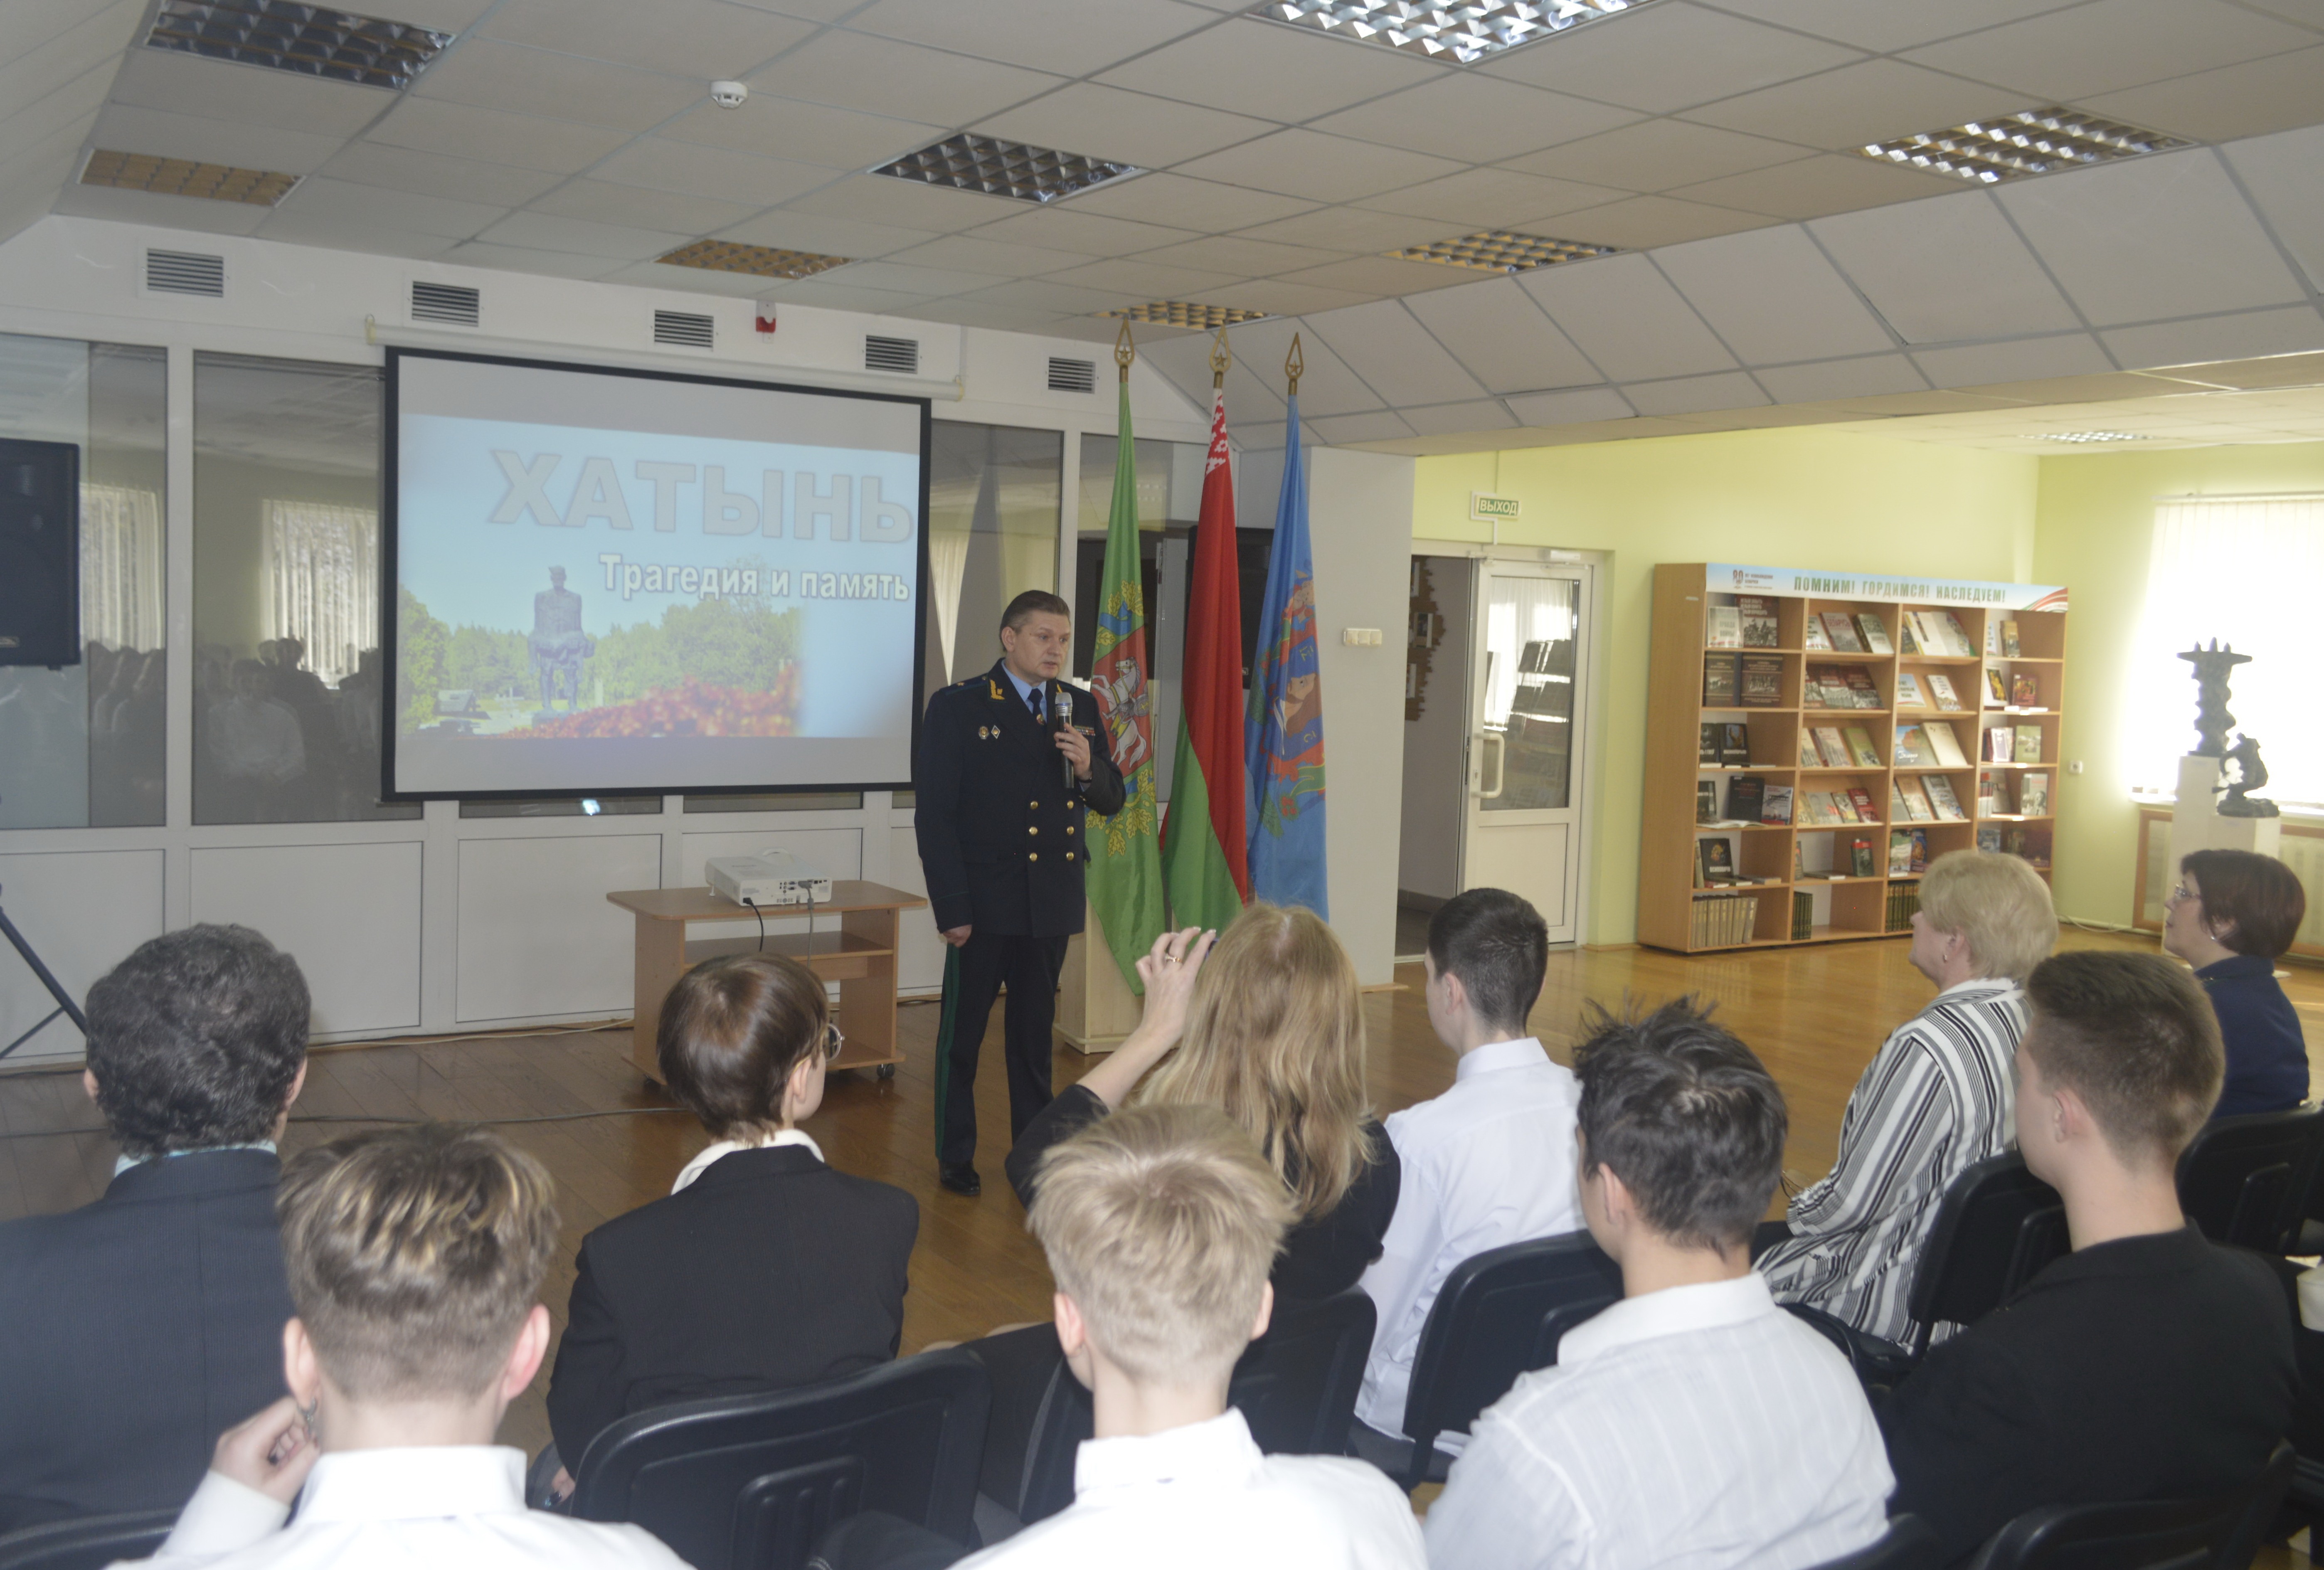 В Витебске с участием прокурора Витебской области состоялся урок-реквием «Хатынь: трагедия и память»